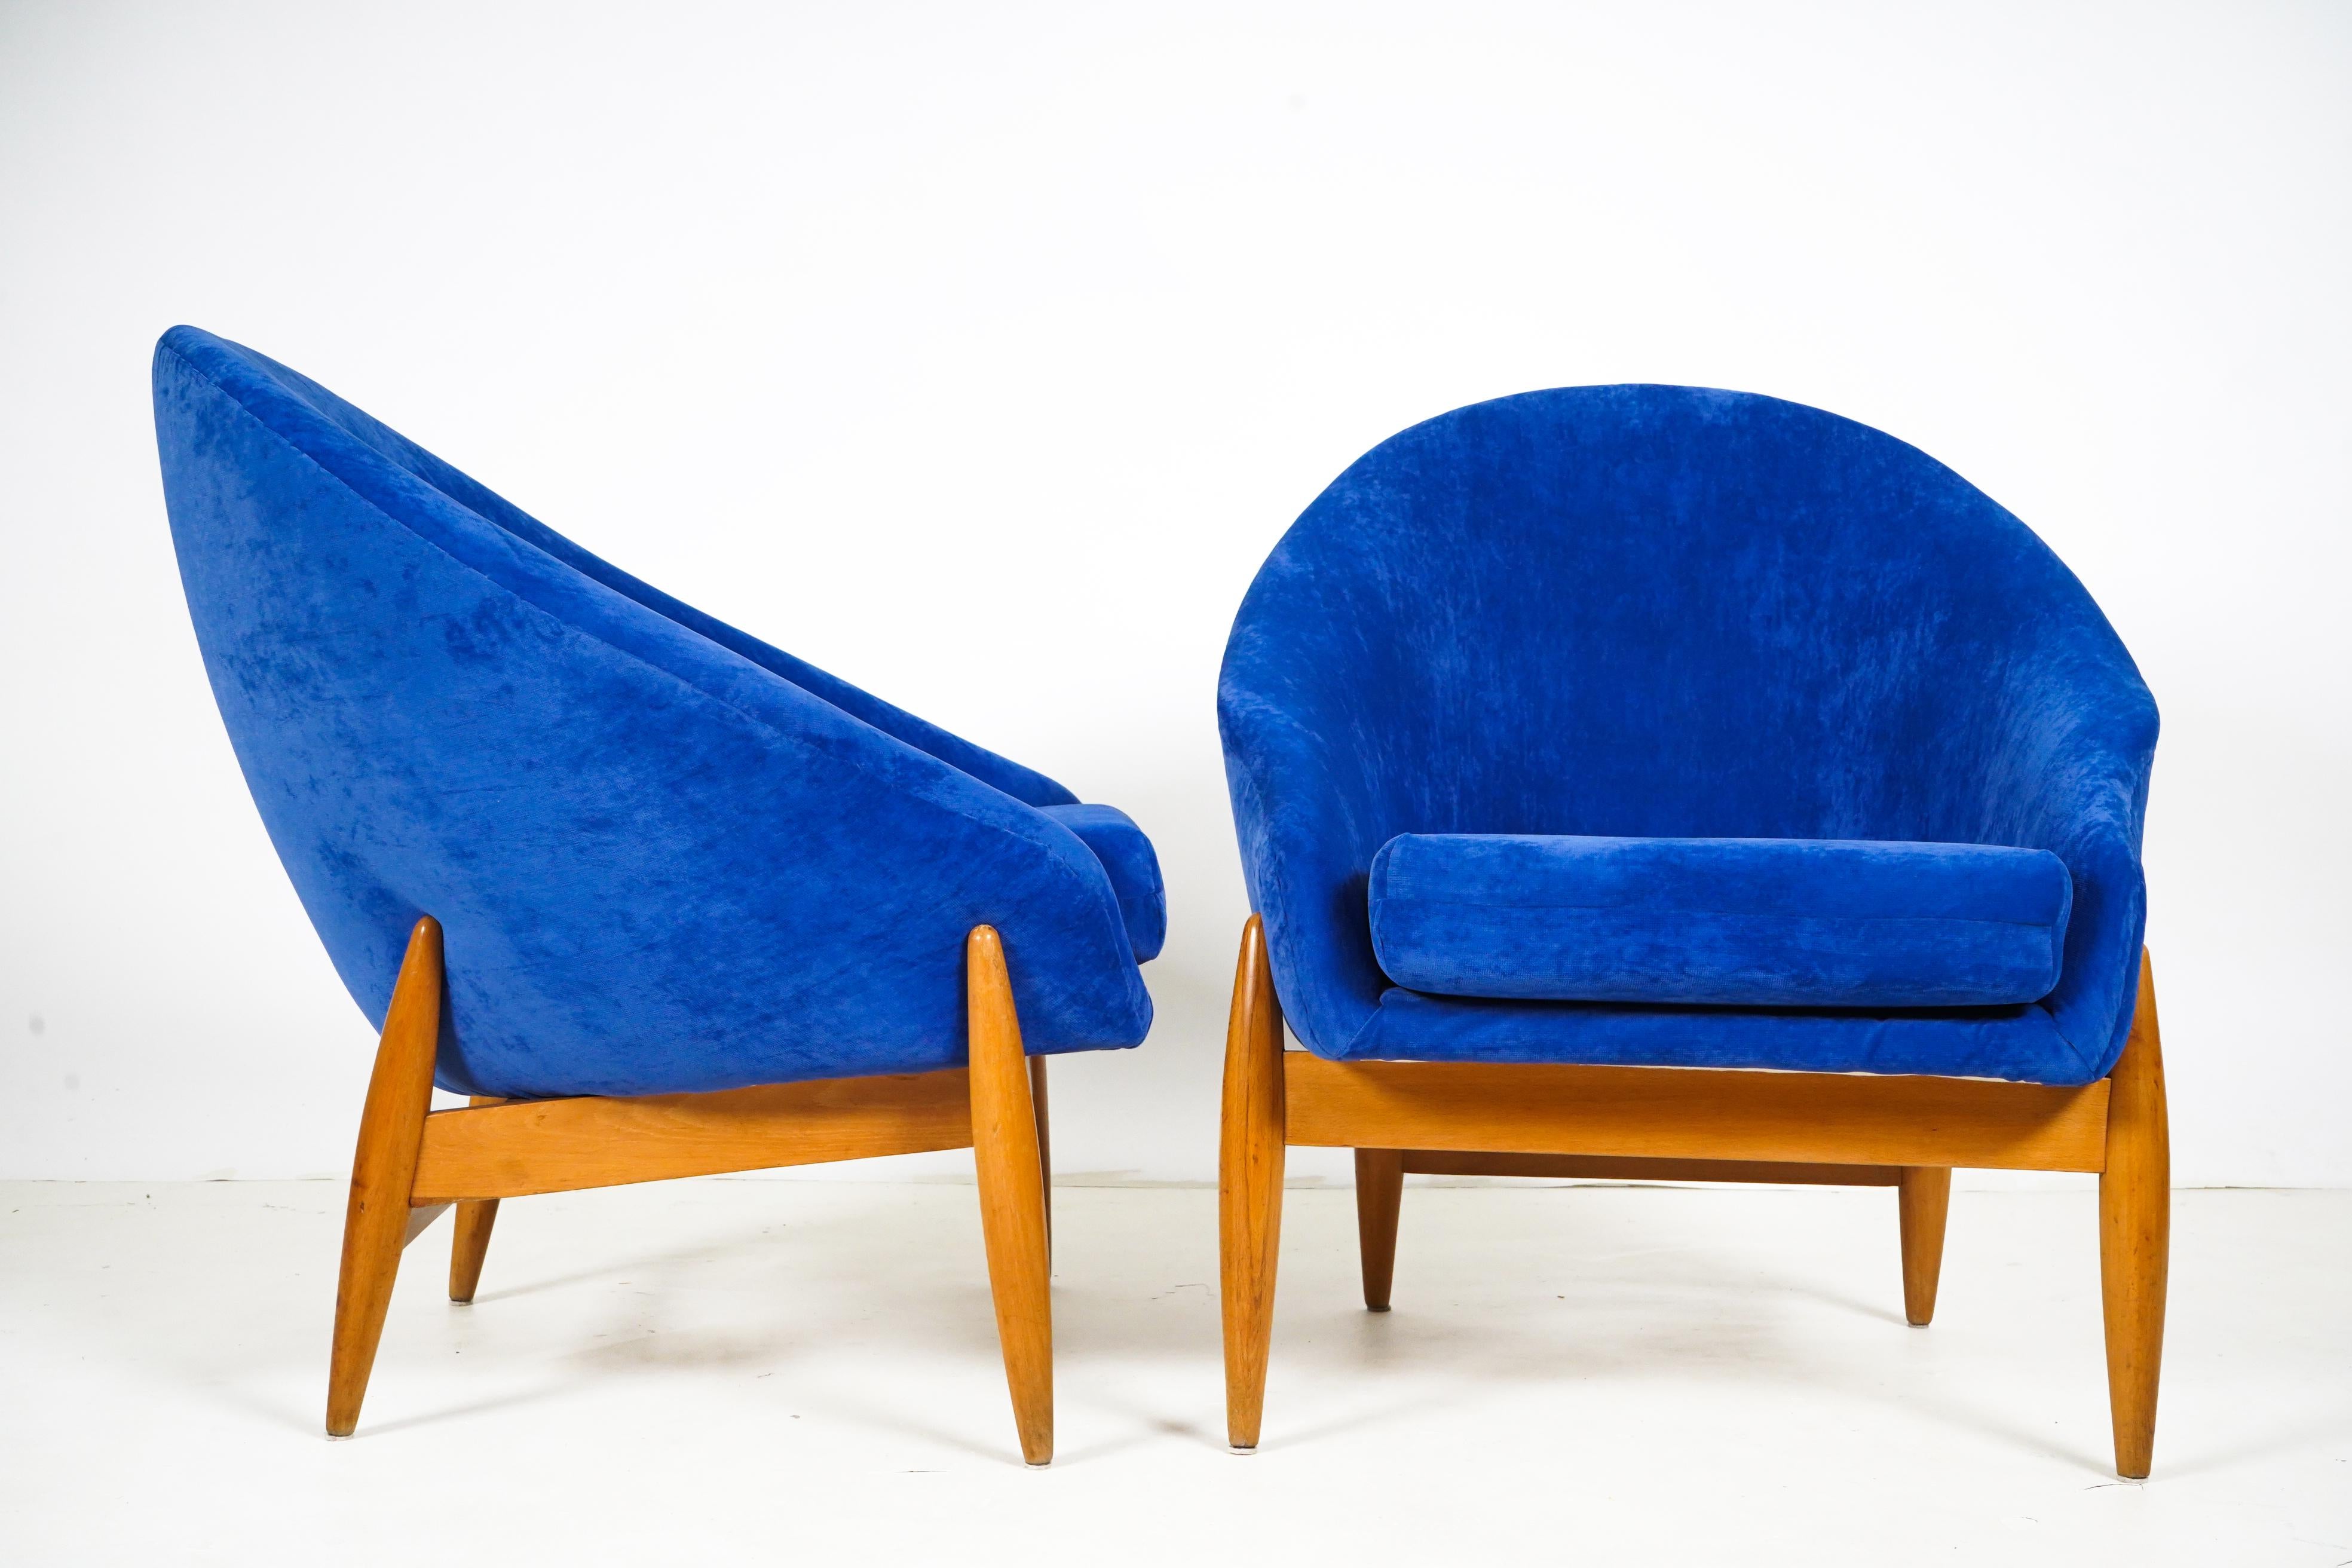 Diese kompakten und geschwungenen Lounge-Sessel wurden in den 1960er Jahren in Budapest, Ungarn, hergestellt. Sie sind Beispiele für sozialistische Möbel aus der Jahrhundertmitte, d. h. für moderne Möbel, die nach dem Zweiten Weltkrieg in den